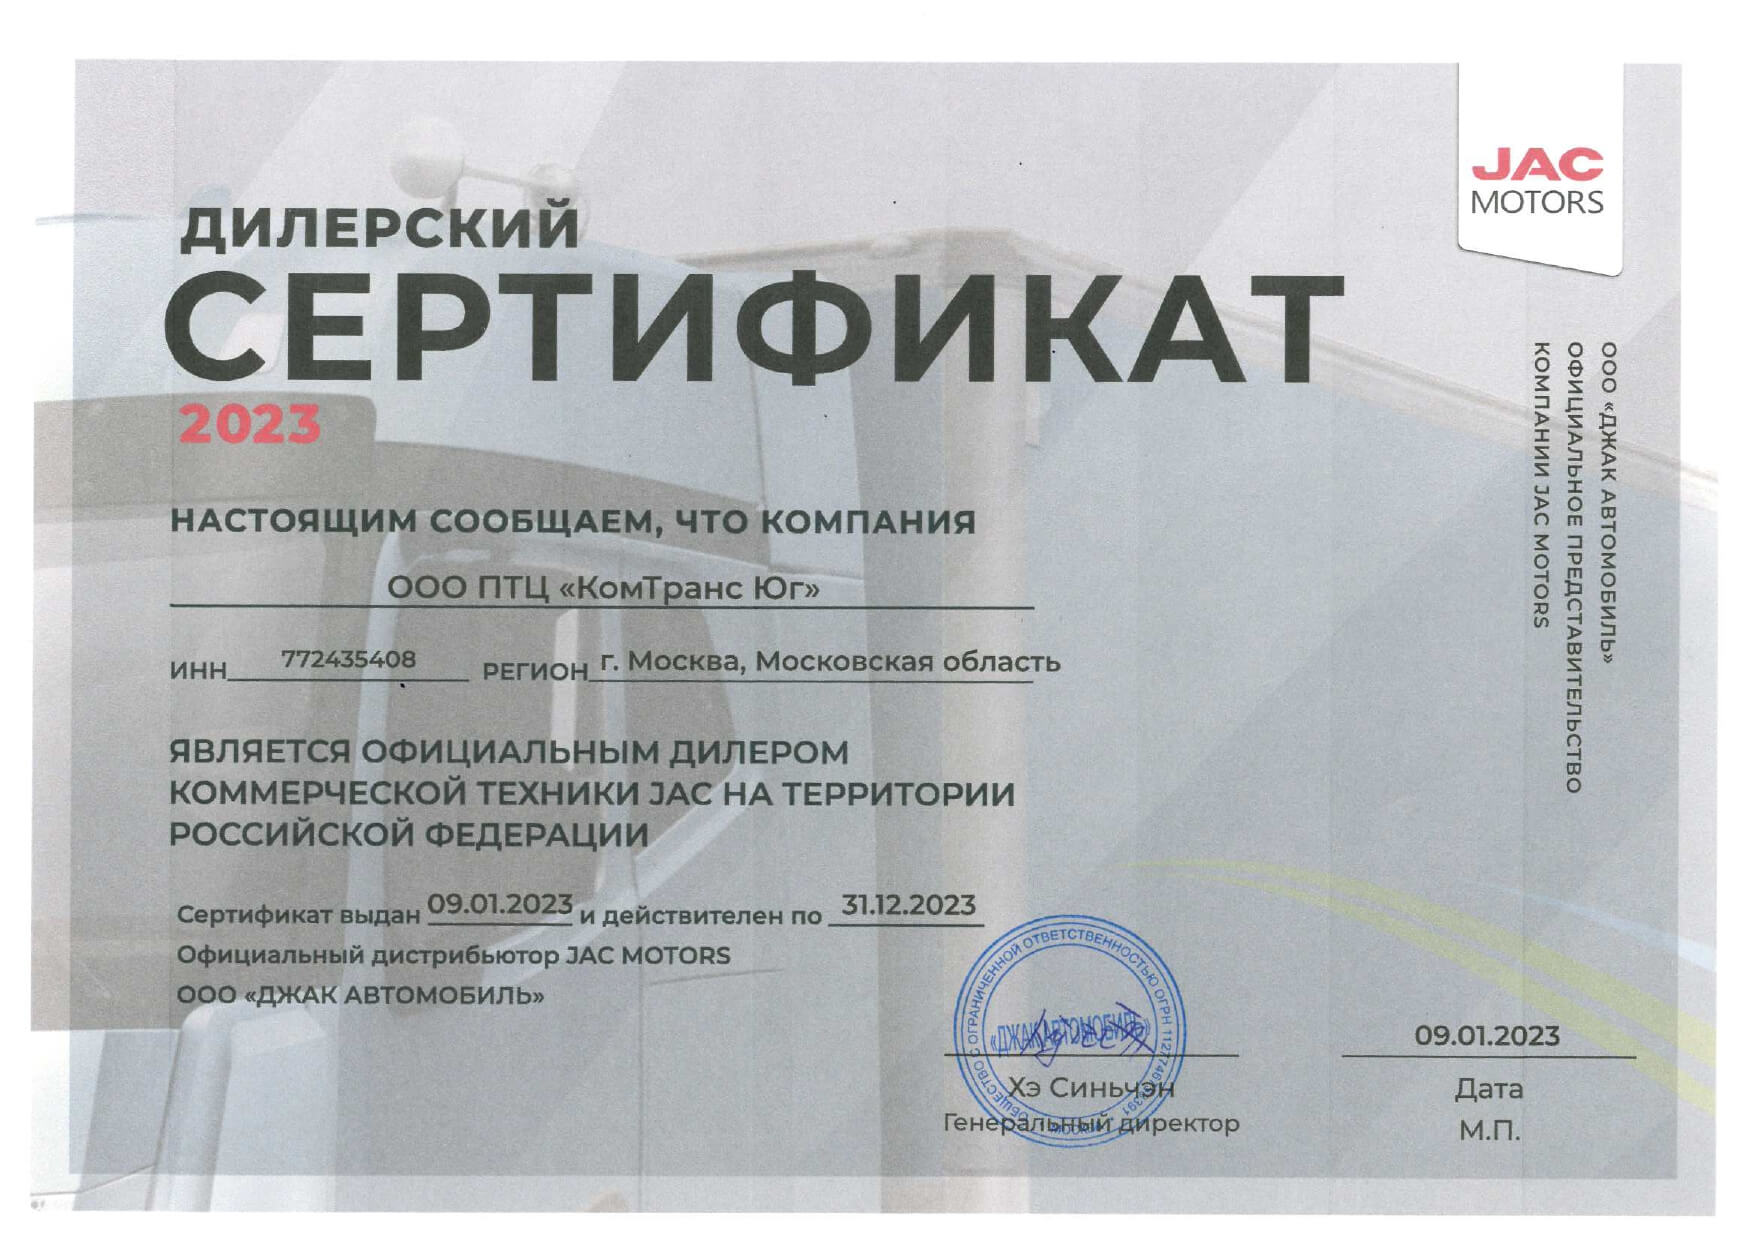 Сертификат официального дилера коммерческой техники JAC 